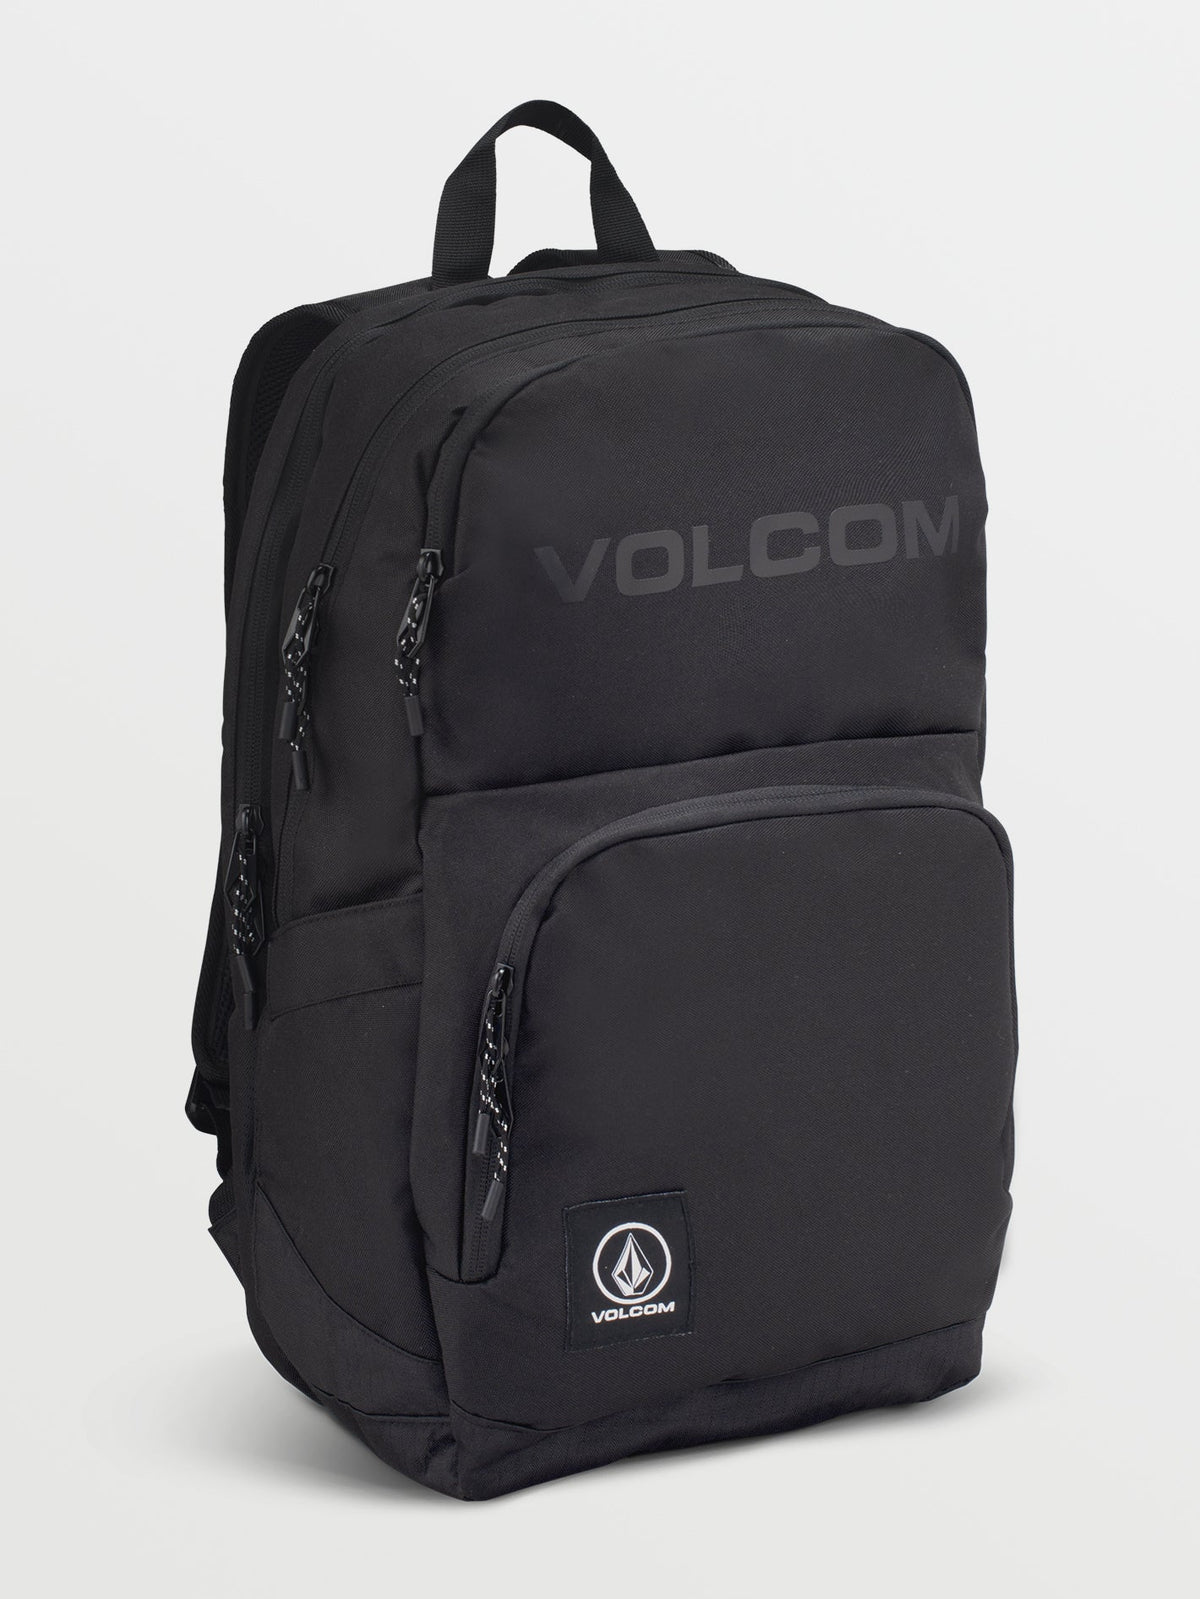 Volcom Roamer 2.0 Backpack Black